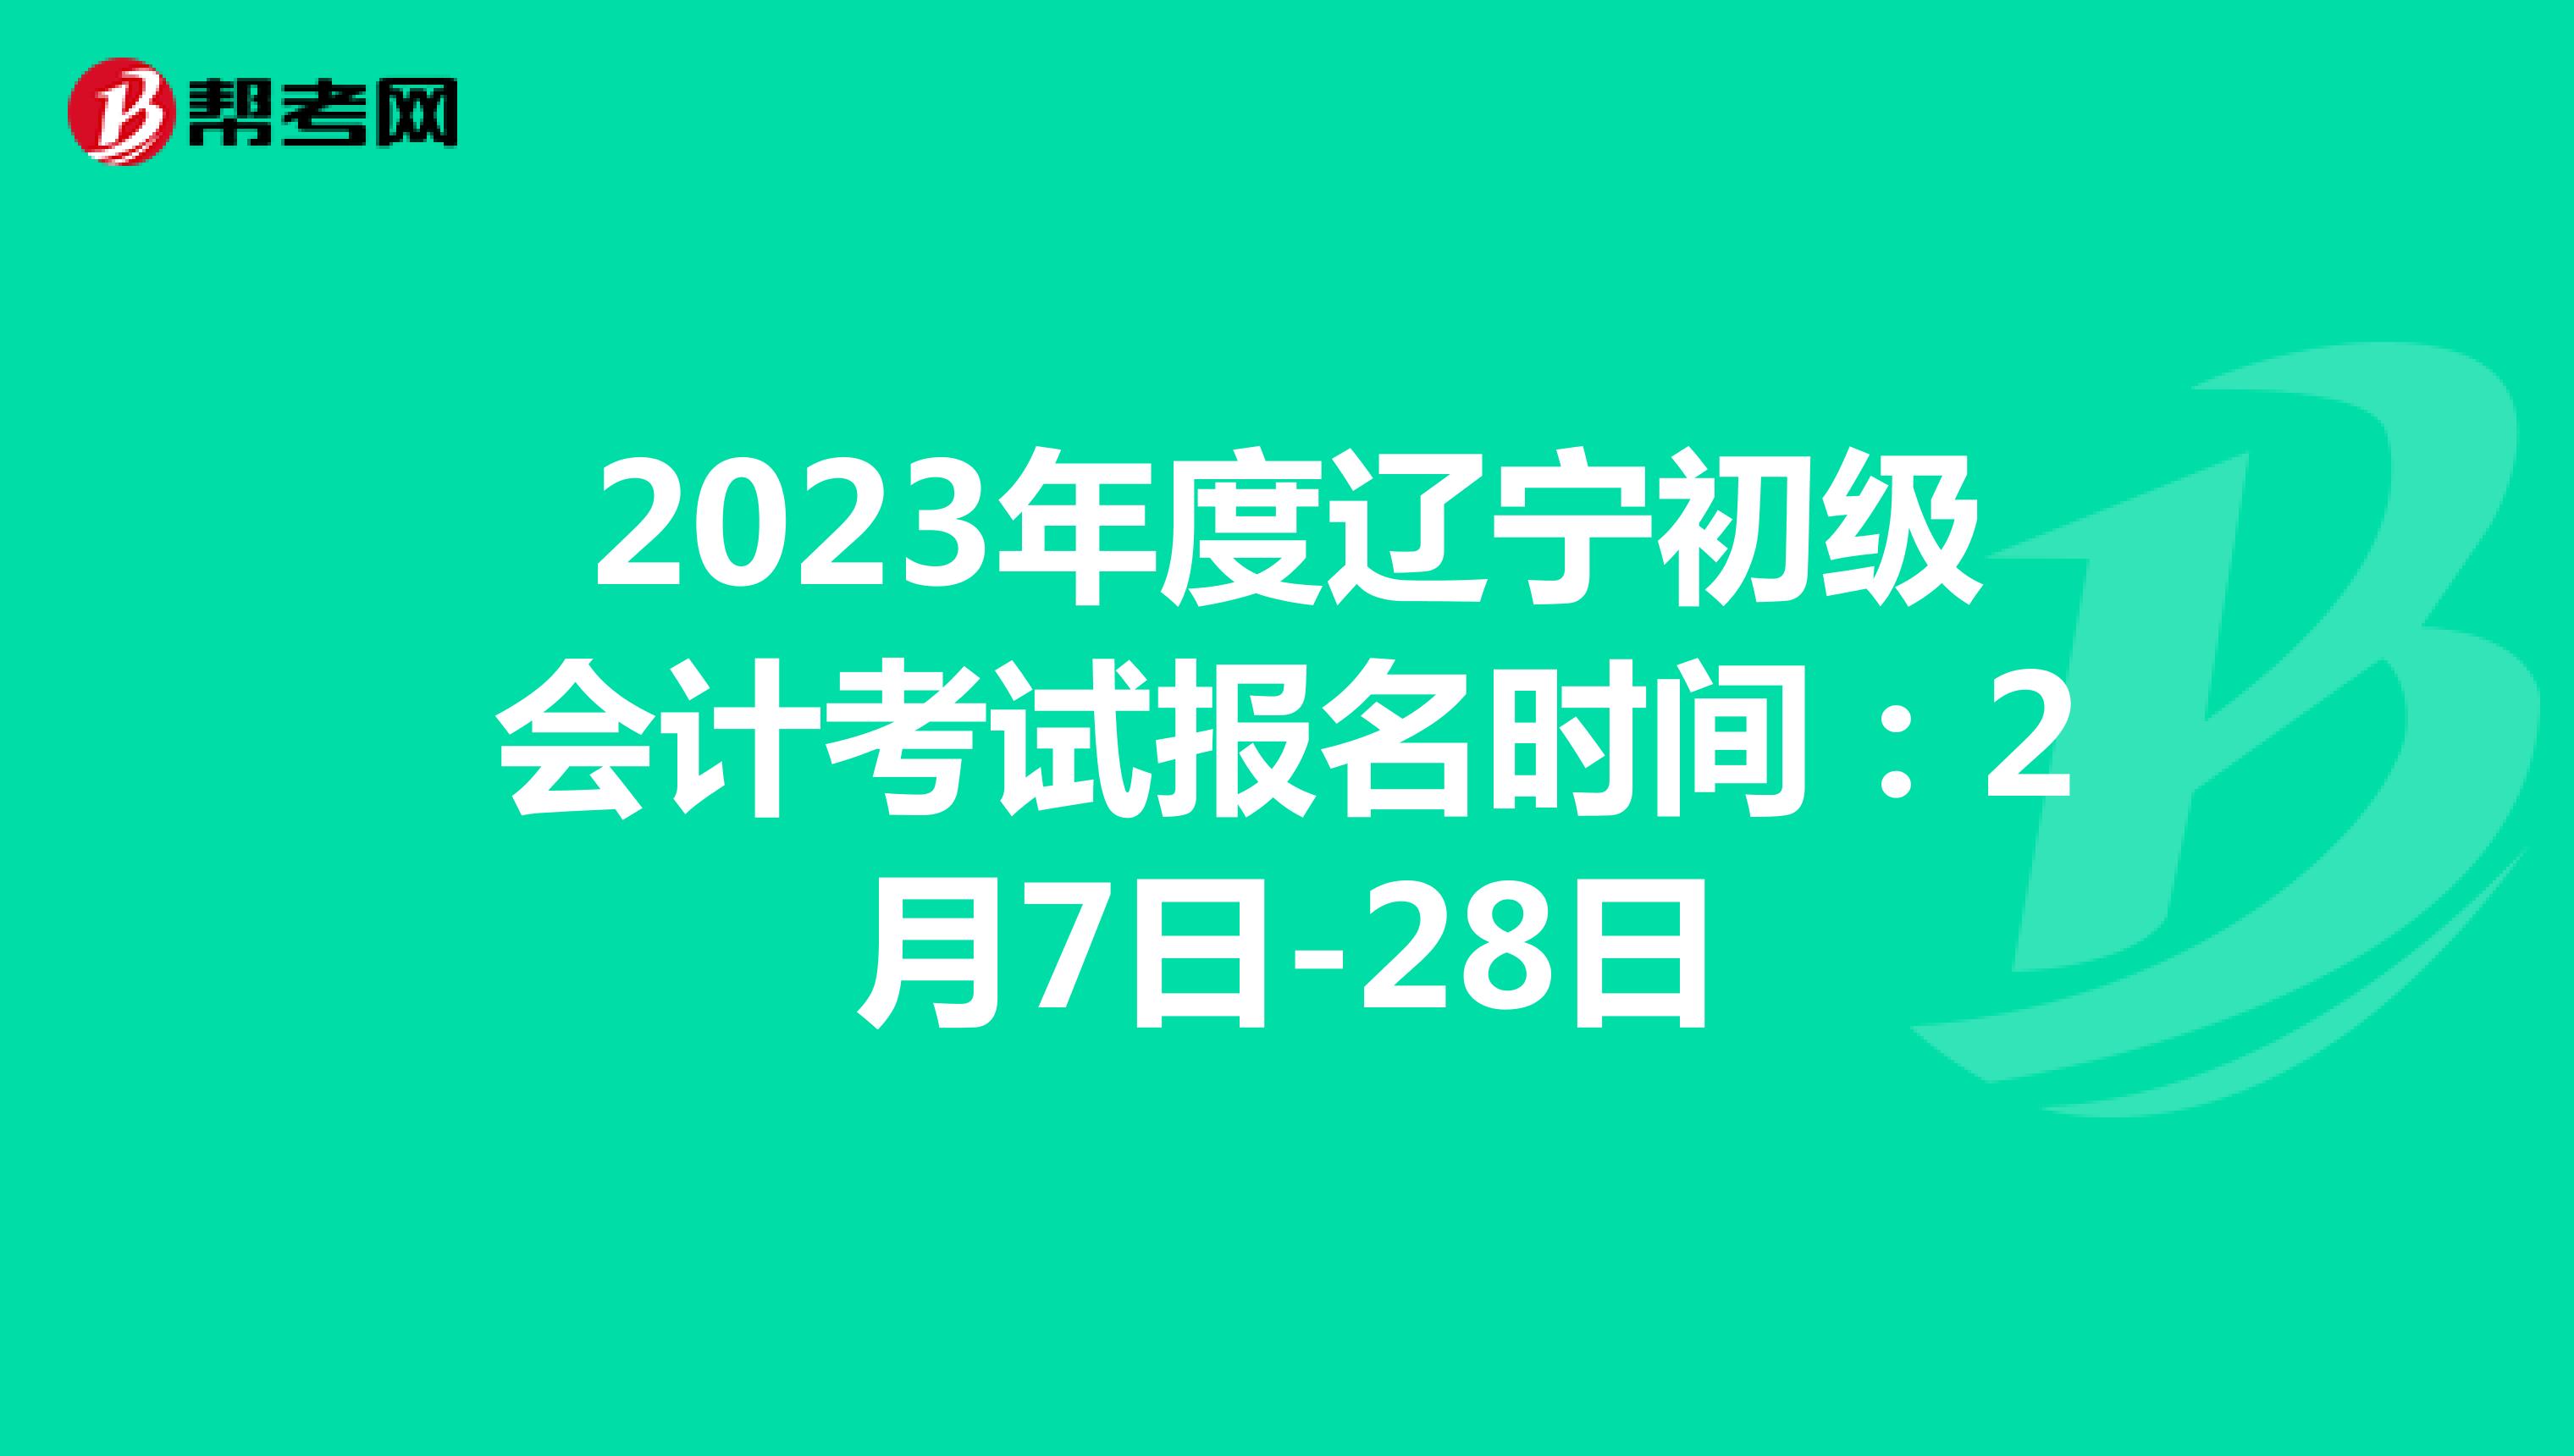  2023年度辽宁初级会计考试报名时间：2月7日-28日